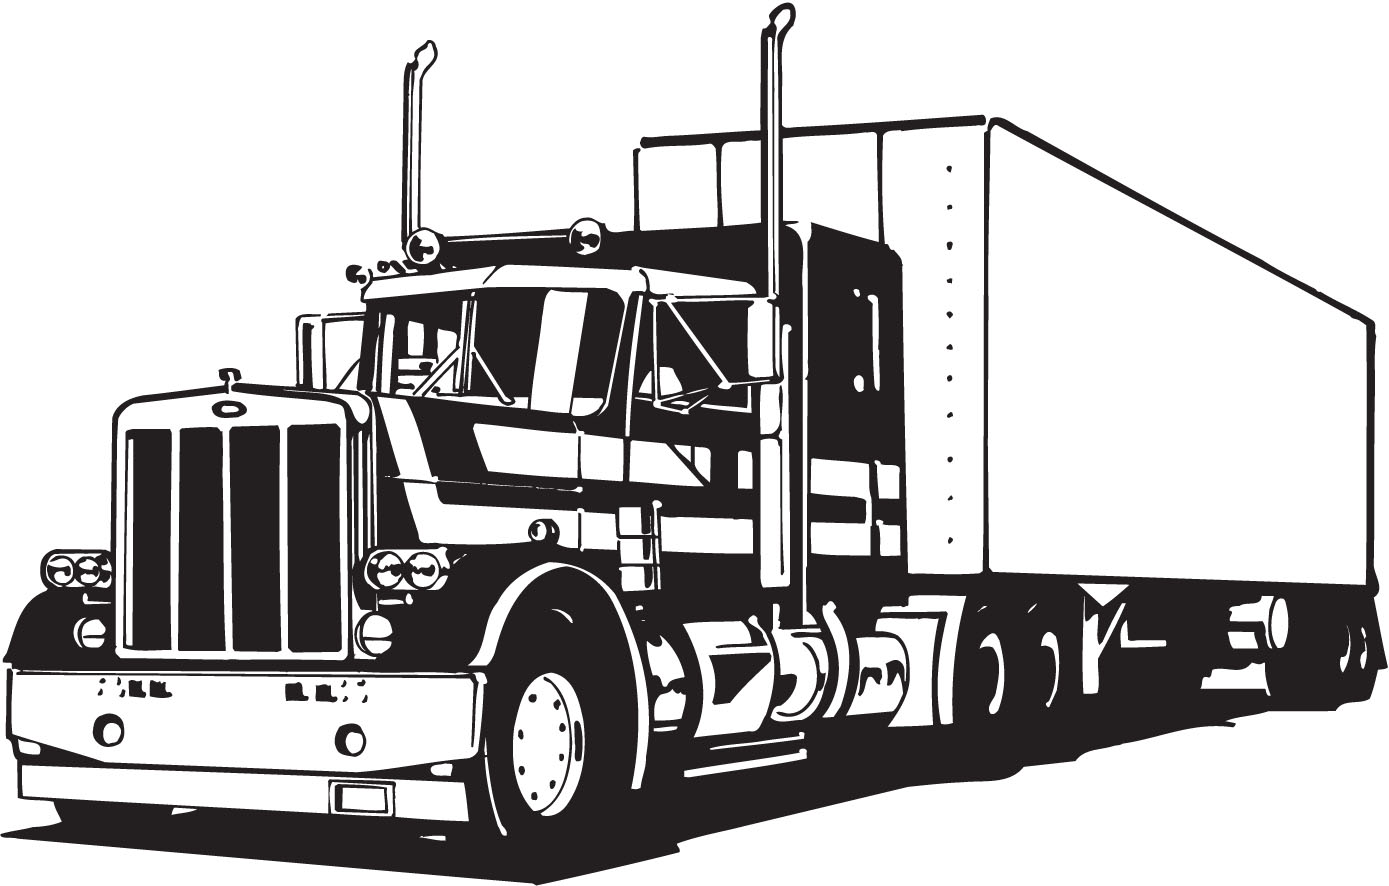 Download Vectorian art: Truck Lineart Vectorfree download, free ...